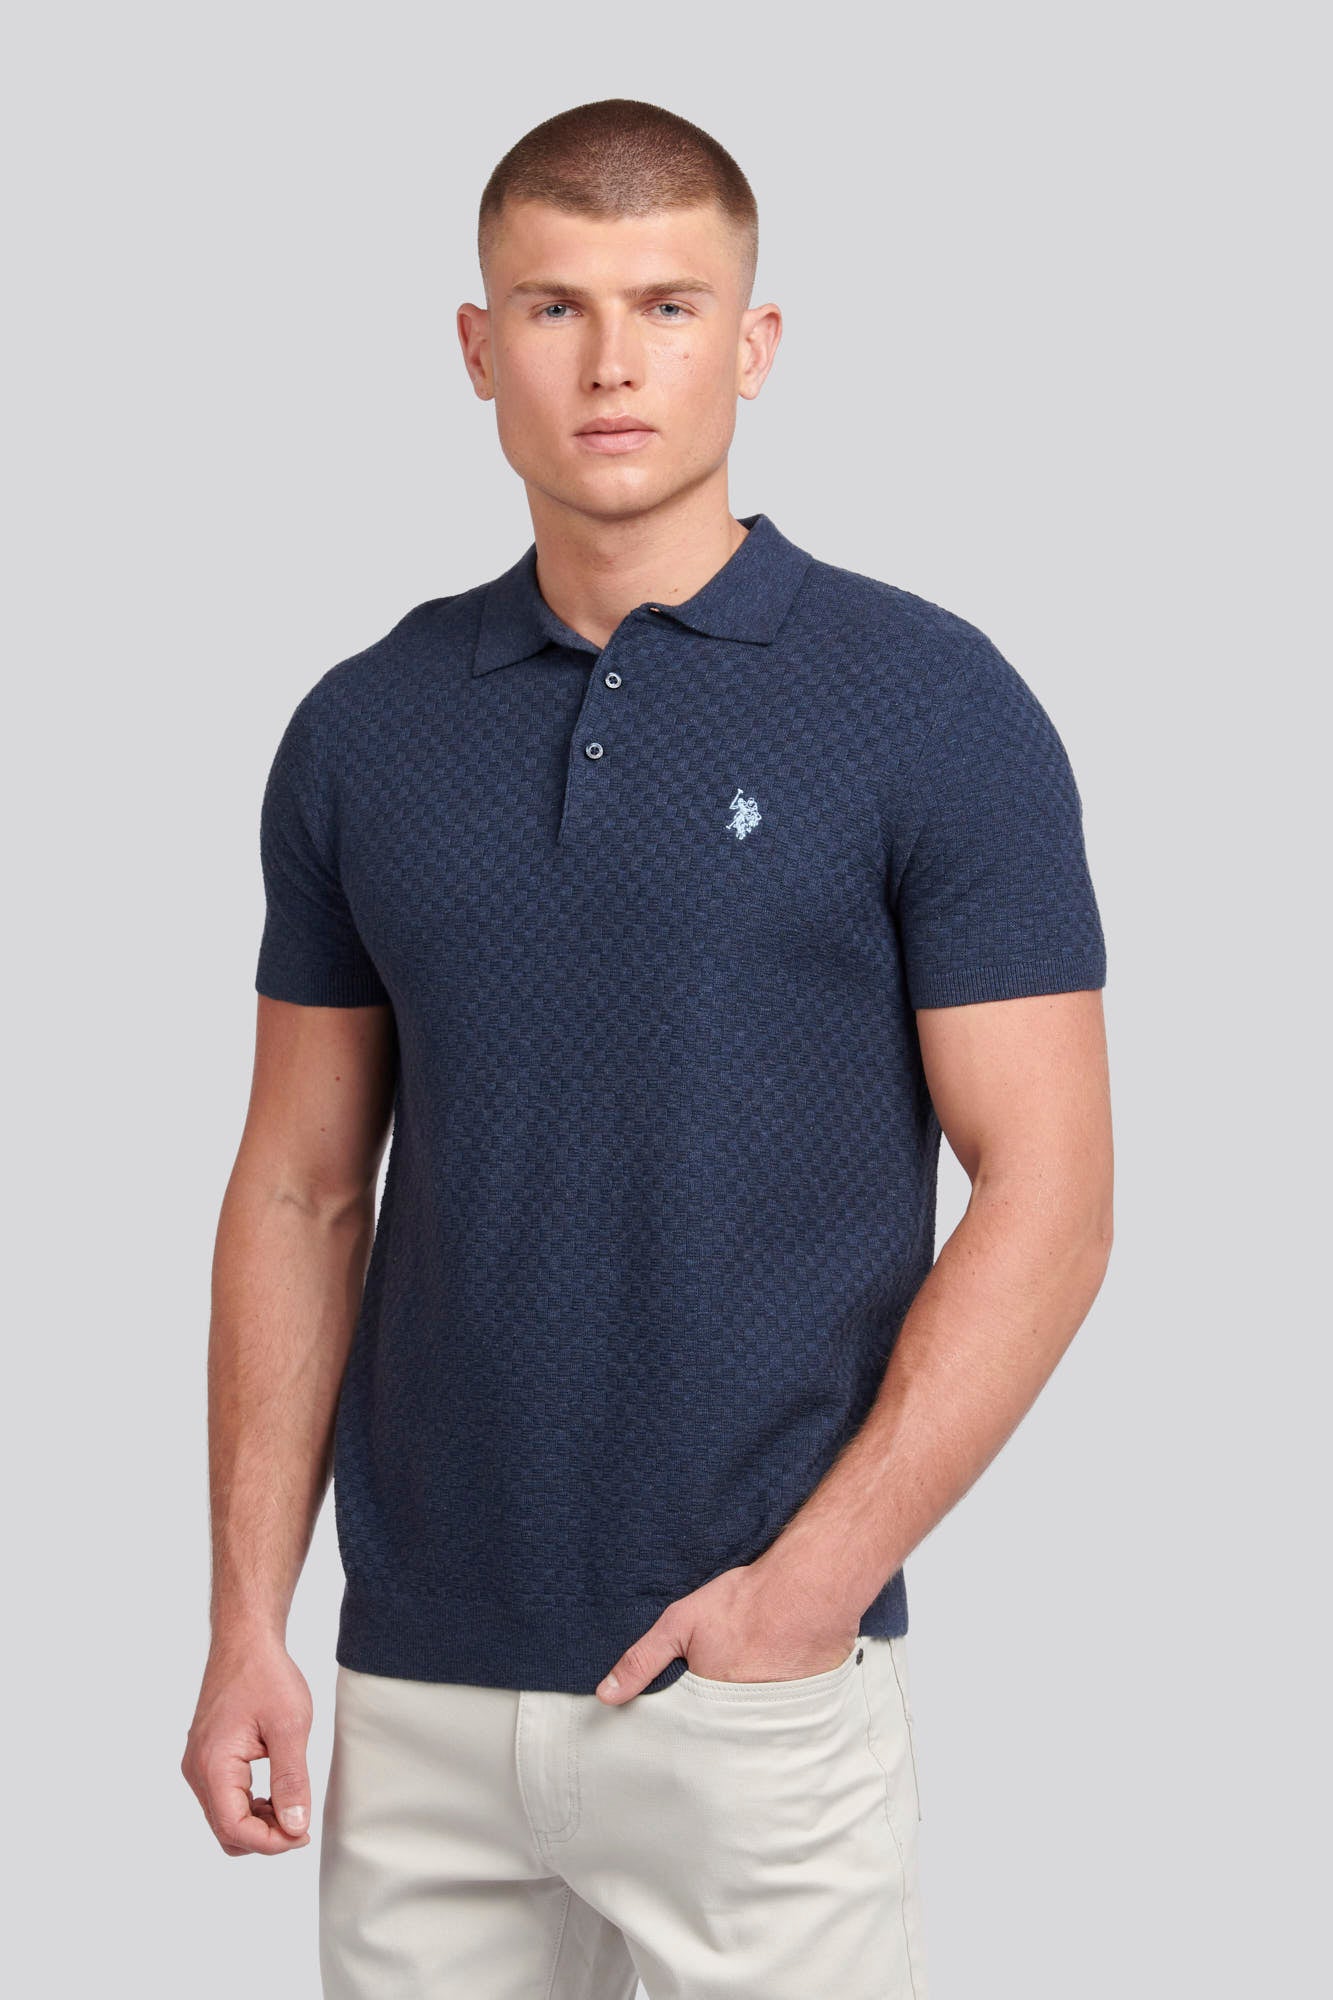 U.S. Polo Assn. Mens Regular Fit Texture Knit Polo Shirt in Dark Sapphire Navy Marl